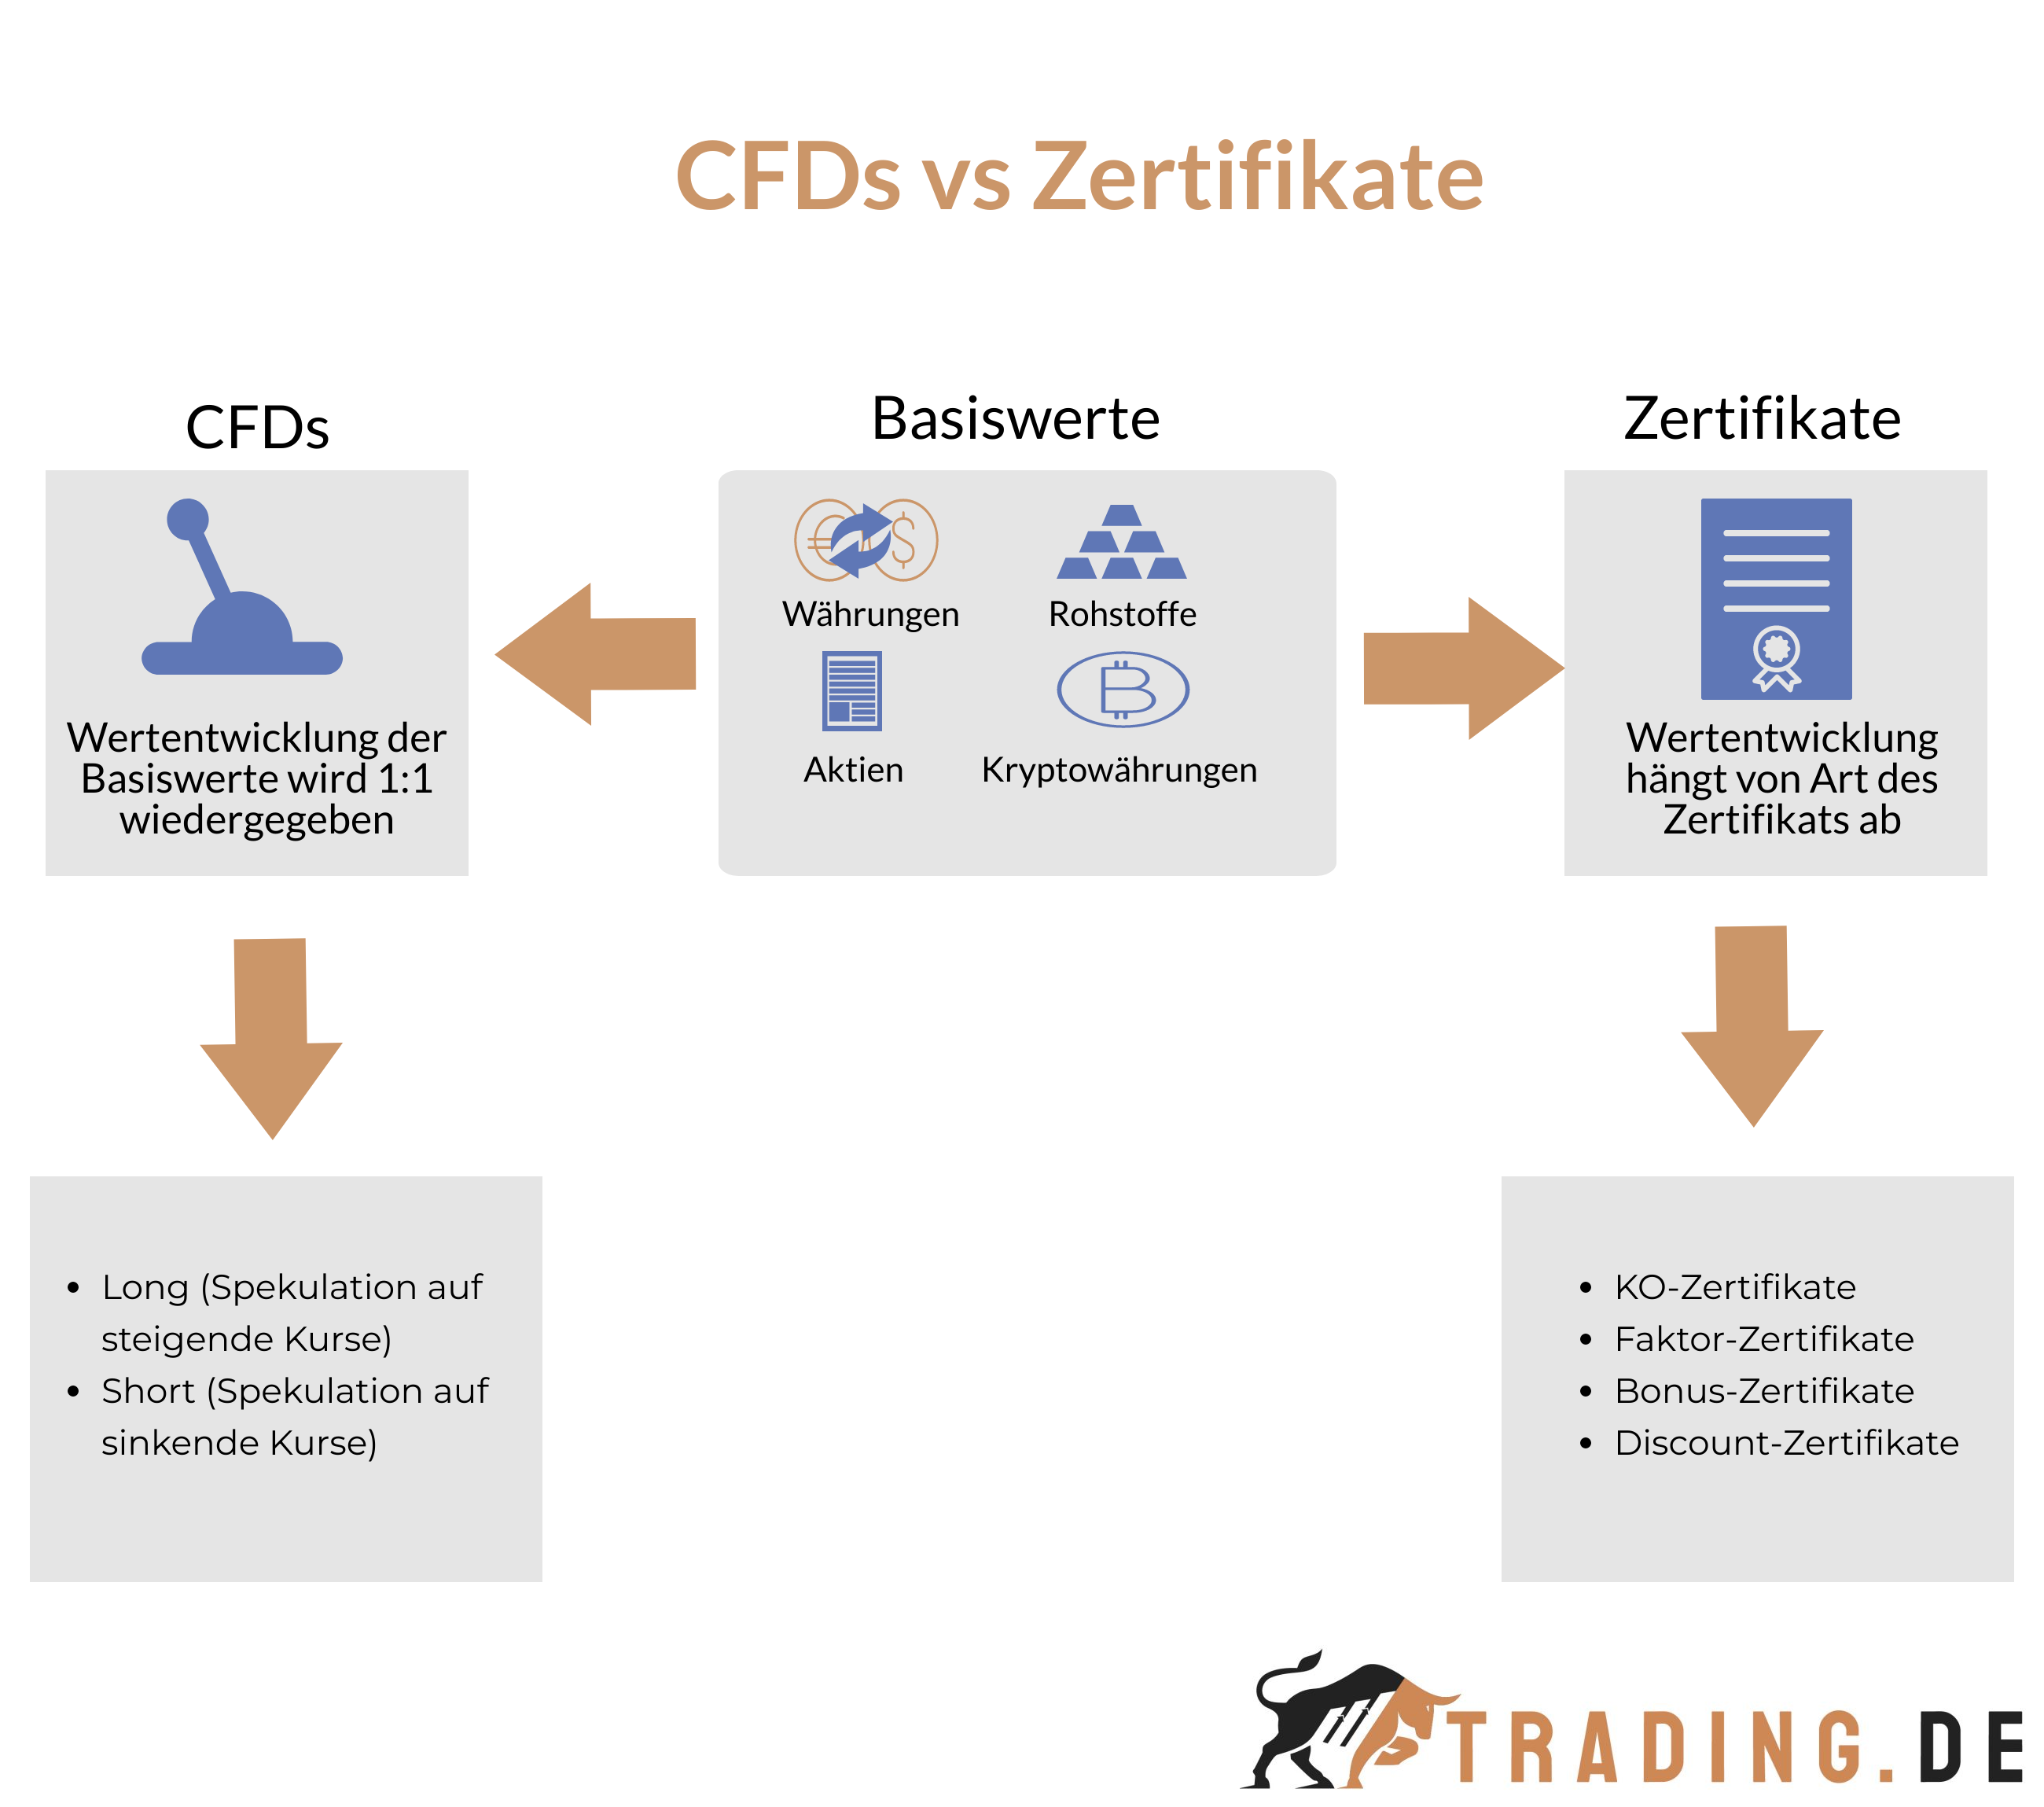 CFDs vs Zertifikate im Vergleich